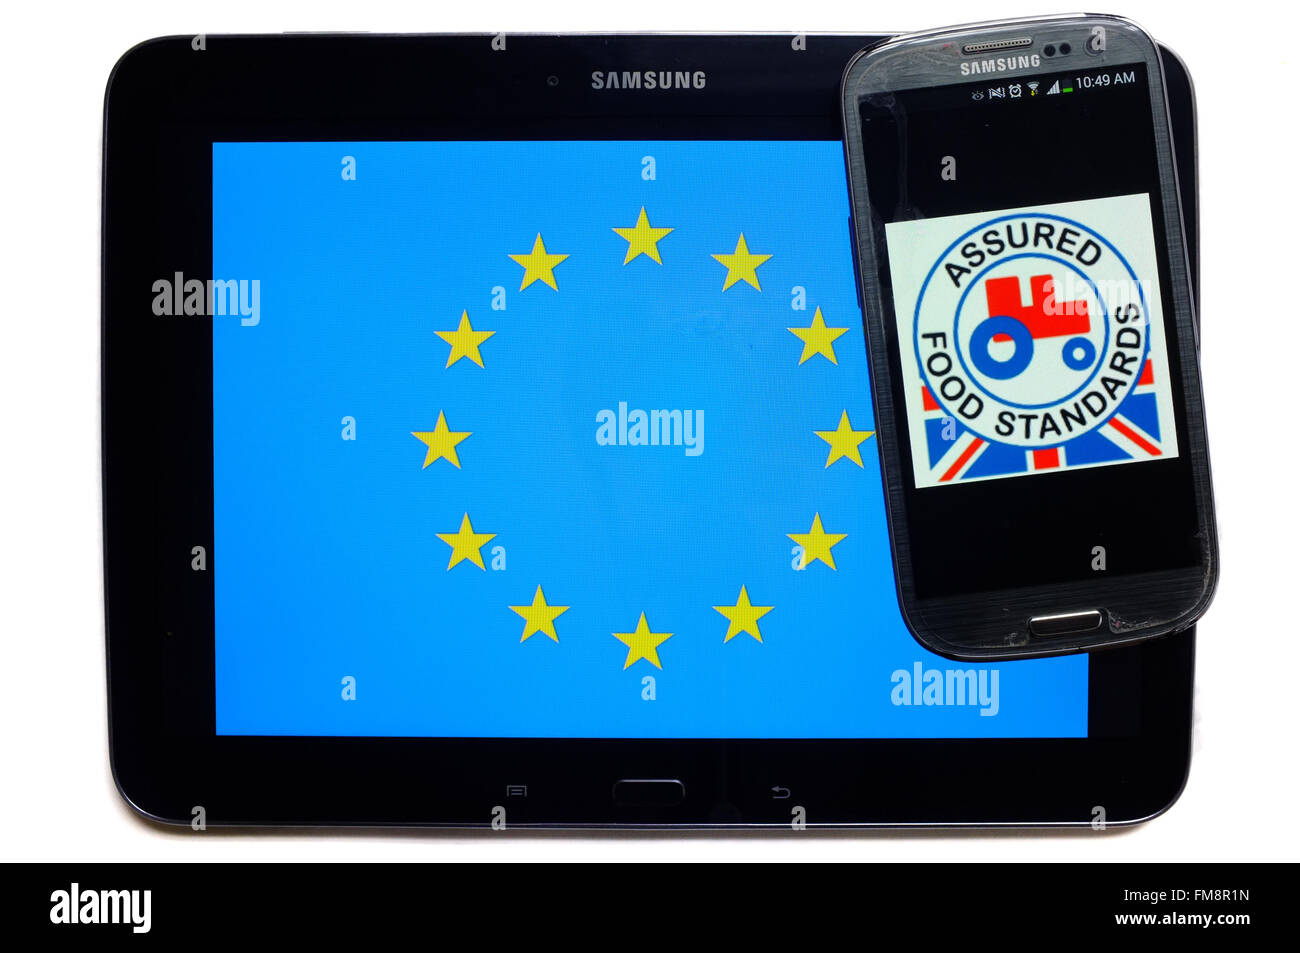 Uno smartphone con l'assicurato gli standard alimentari logo su sulla parte superiore di un tablet con la bandiera dell'UE su di esso contro uno sfondo bianco. Foto Stock